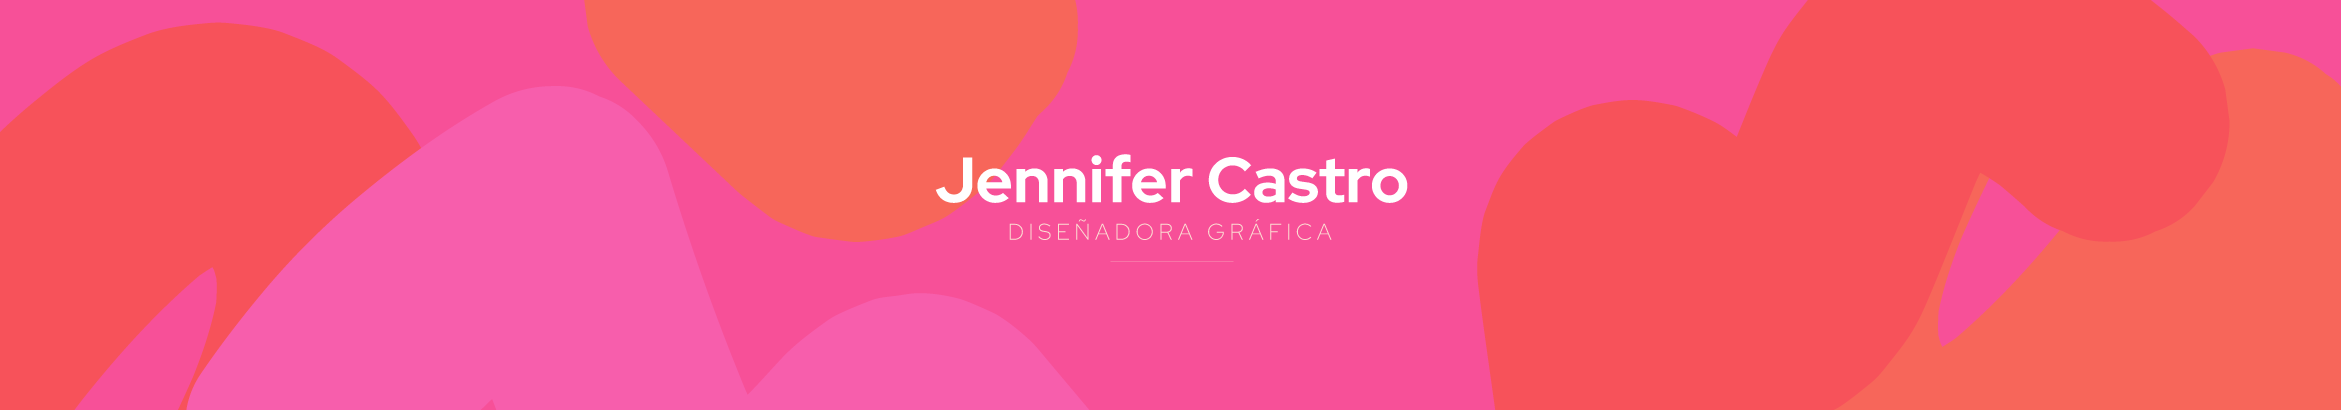 Jennifer Castros profilbanner